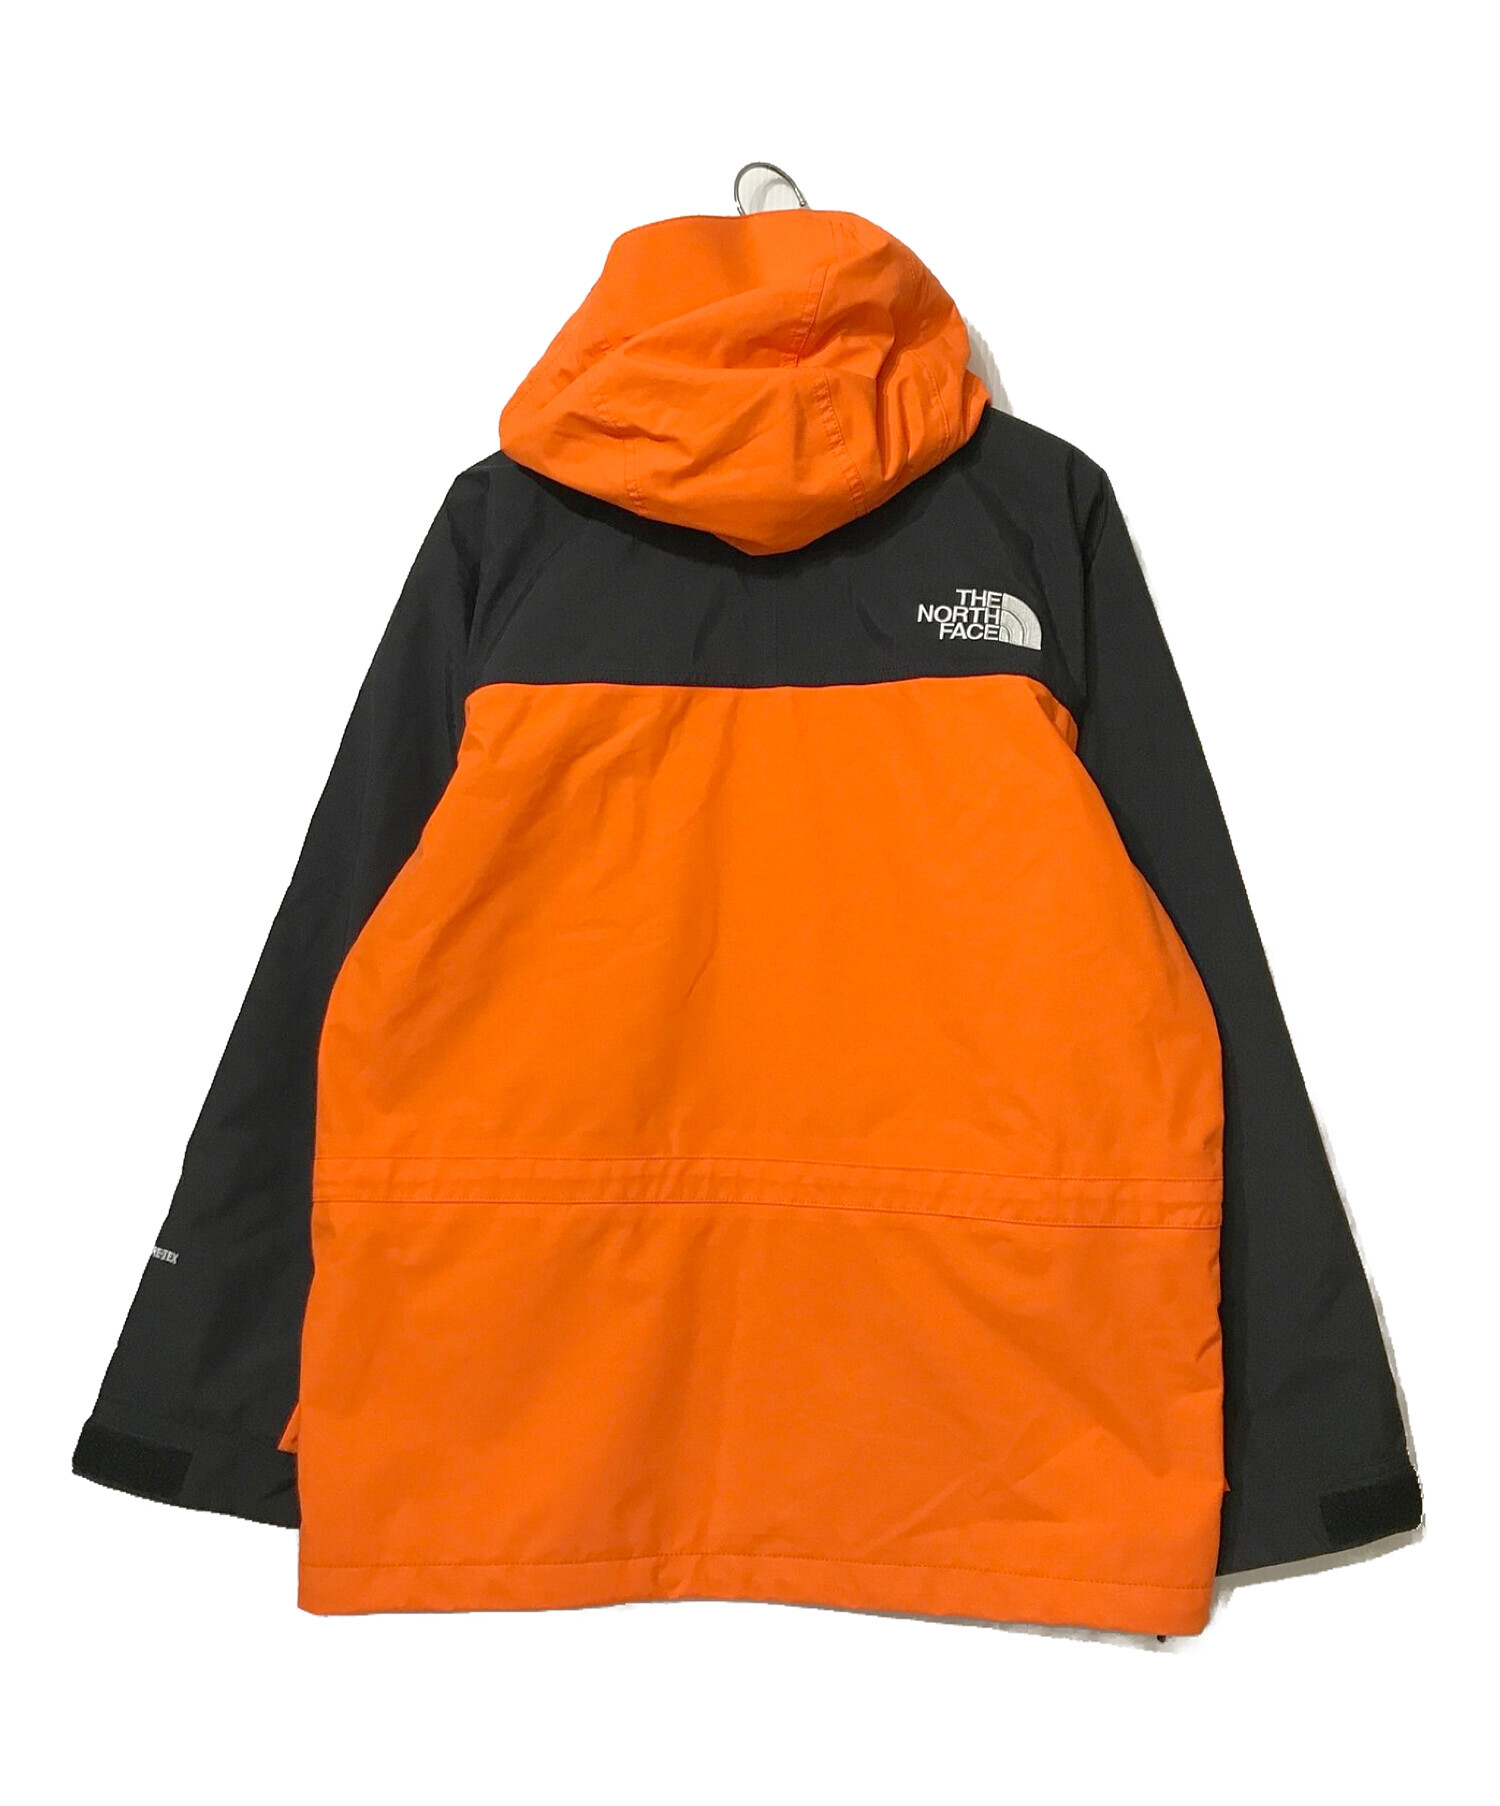 THE NORTH FACE (ザ ノース フェイス) マウンテンライトジャケット オレンジ×ブラック サイズ:M